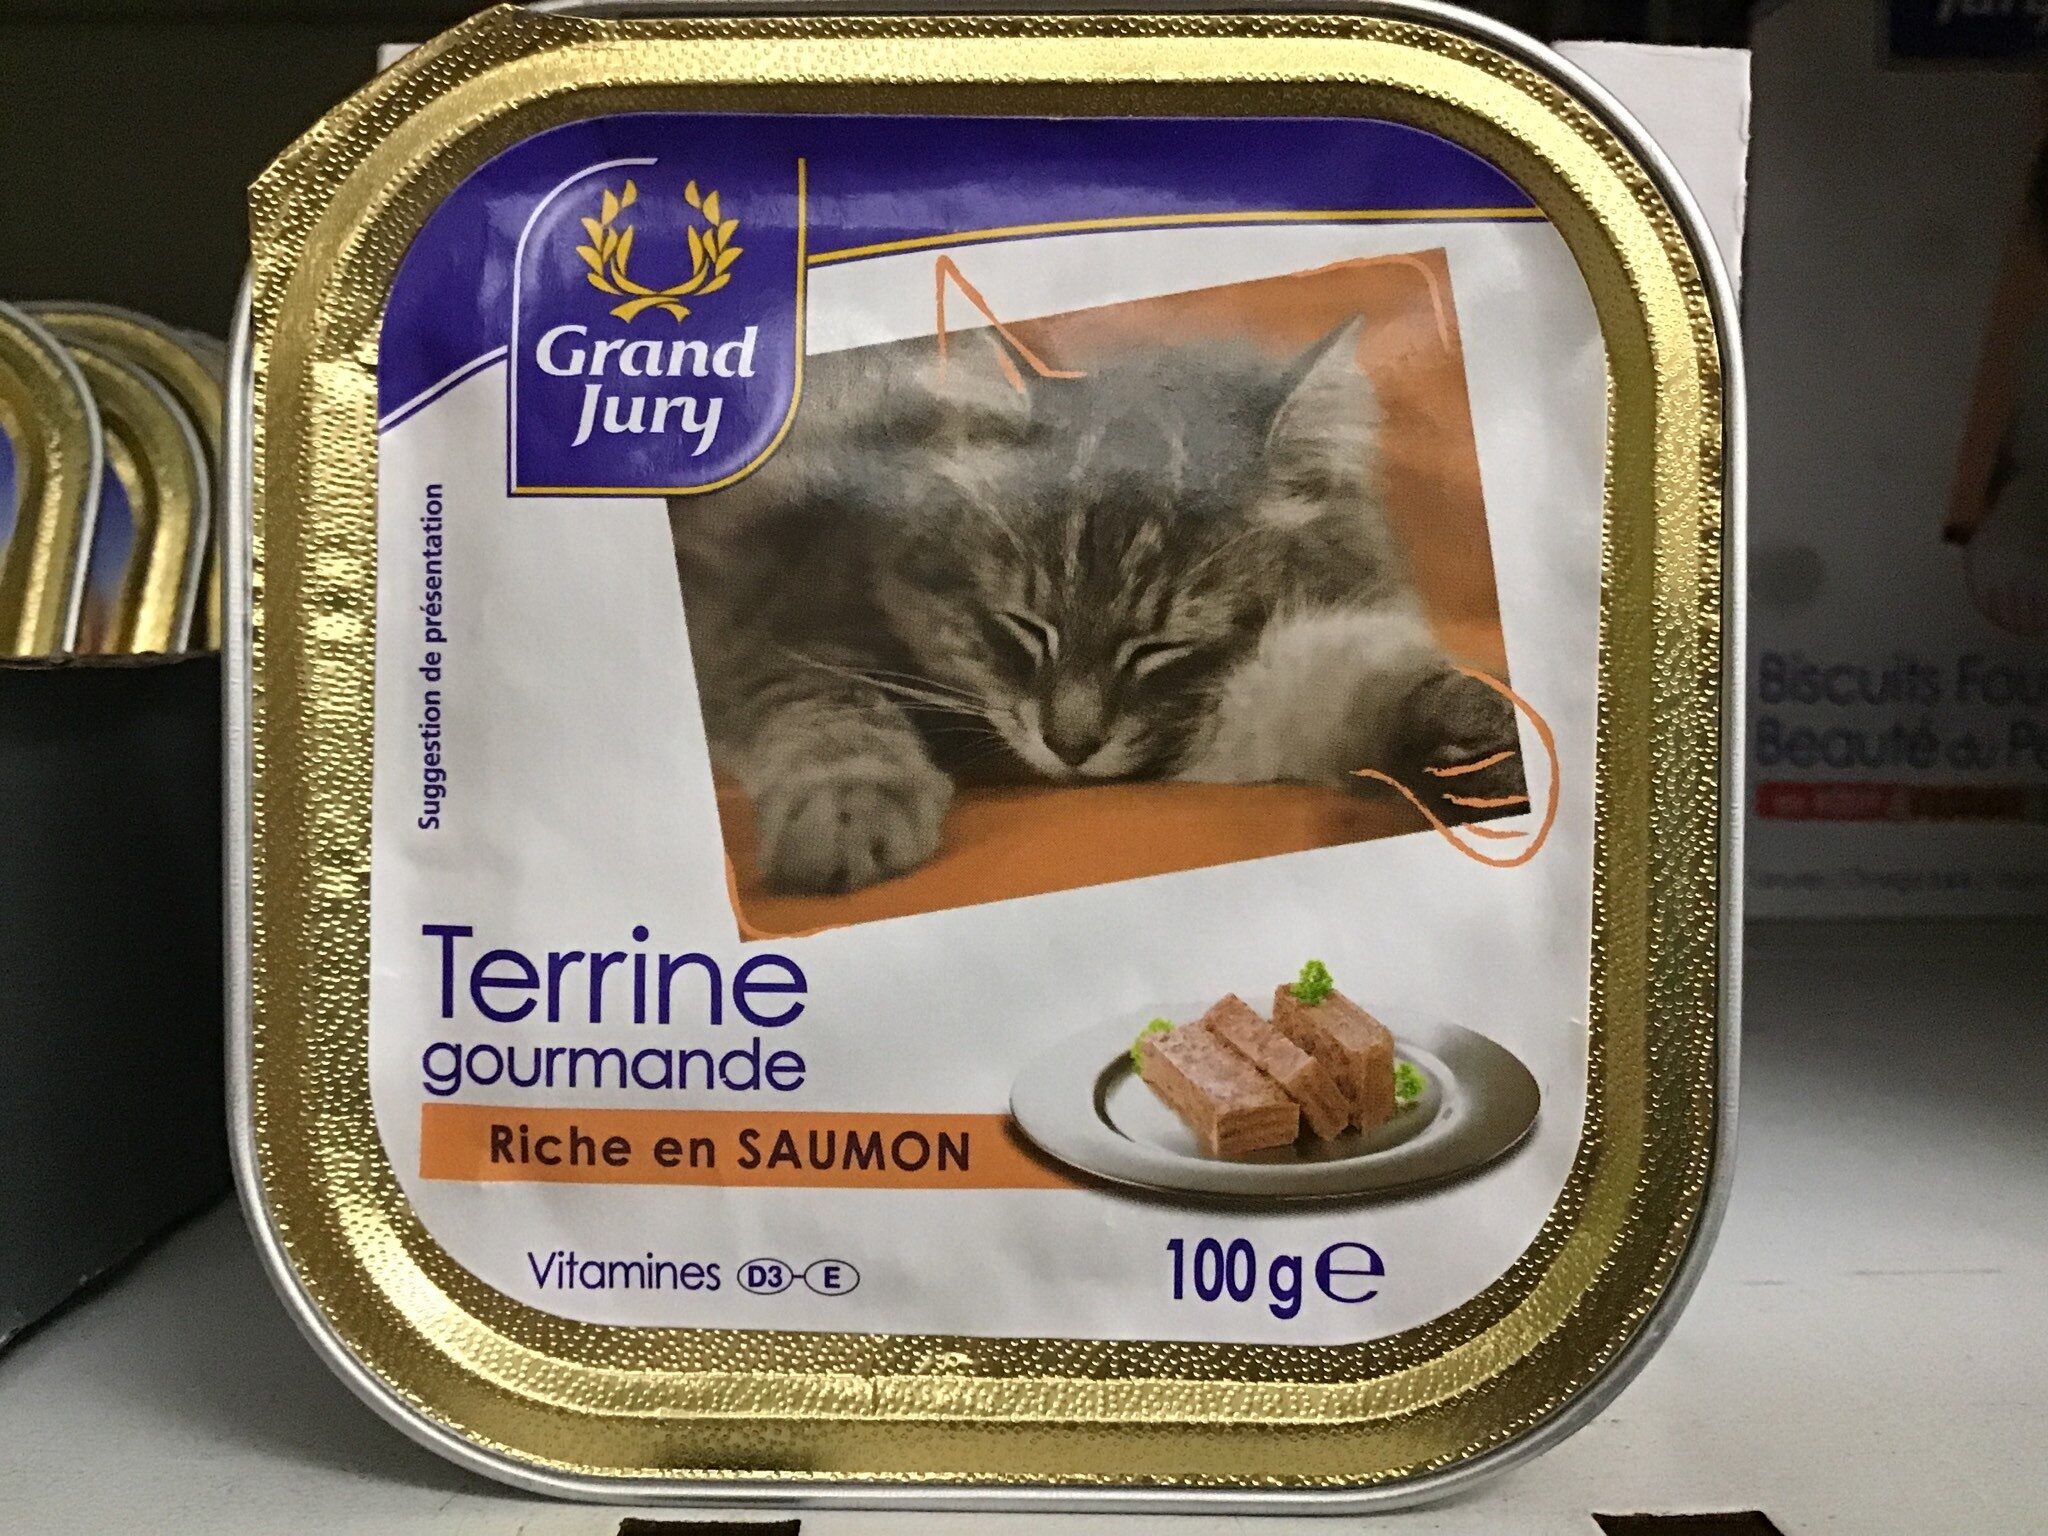 Terrine saumon pour chats - Product - fr